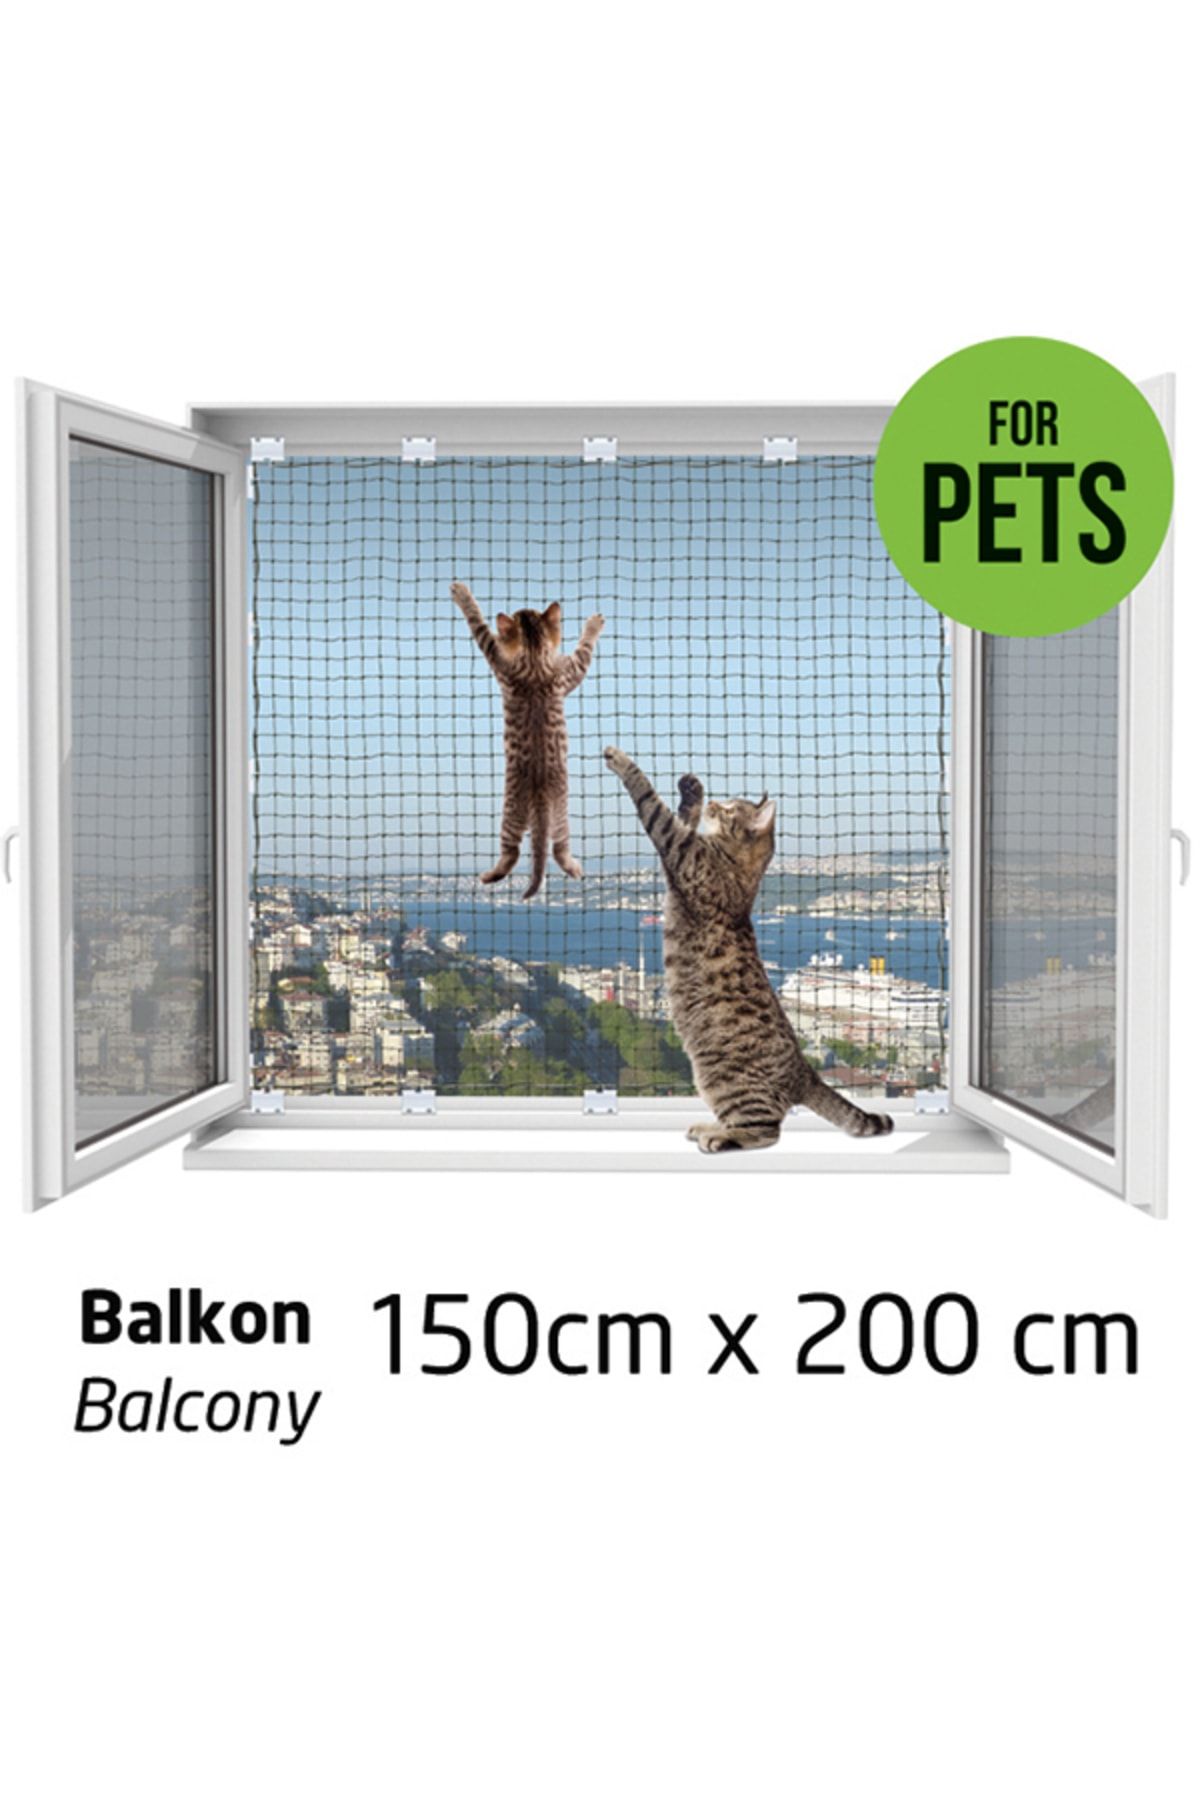 WINBLOCK Pets Balkonlar Için Kedi Güvenlik Ağı 150cm X 200cm